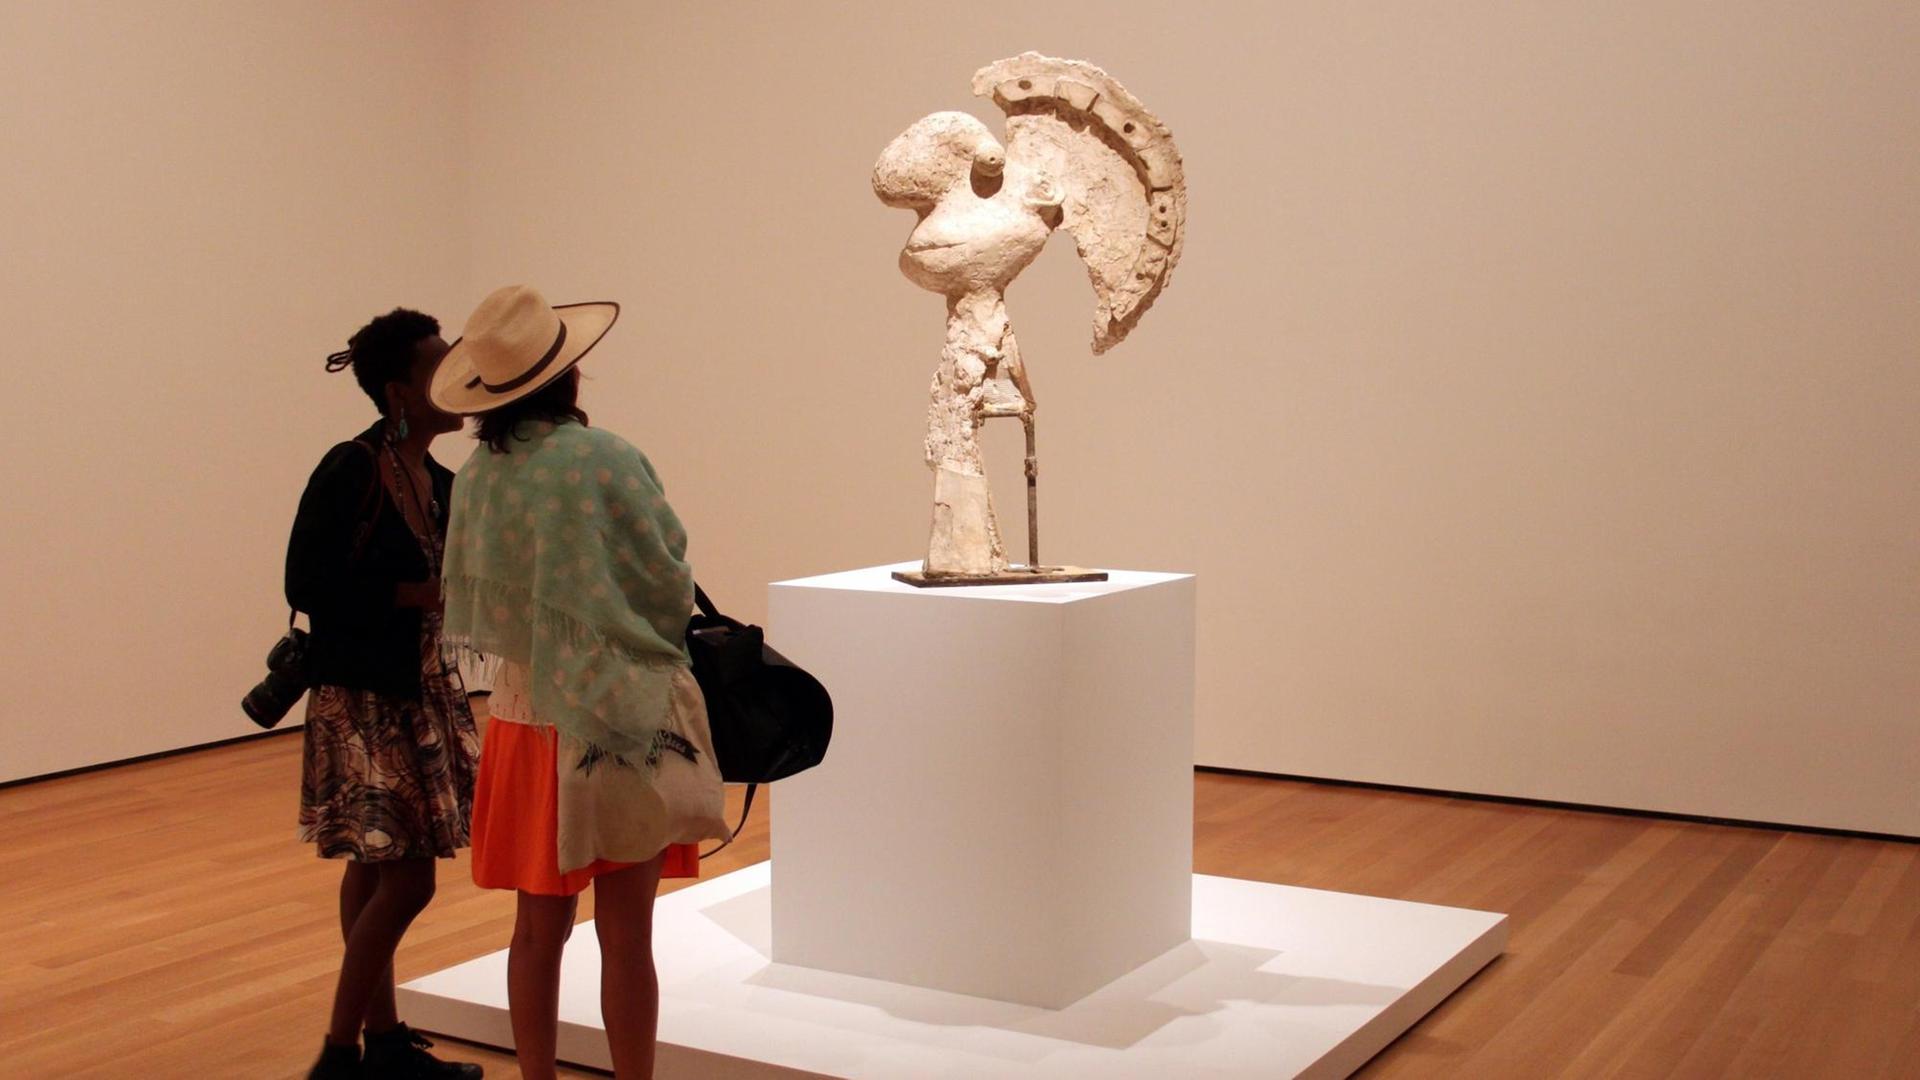 "Head of a Warrior" in der Ausstellung "Picasso Sculpture" im New Yorker MoMA.